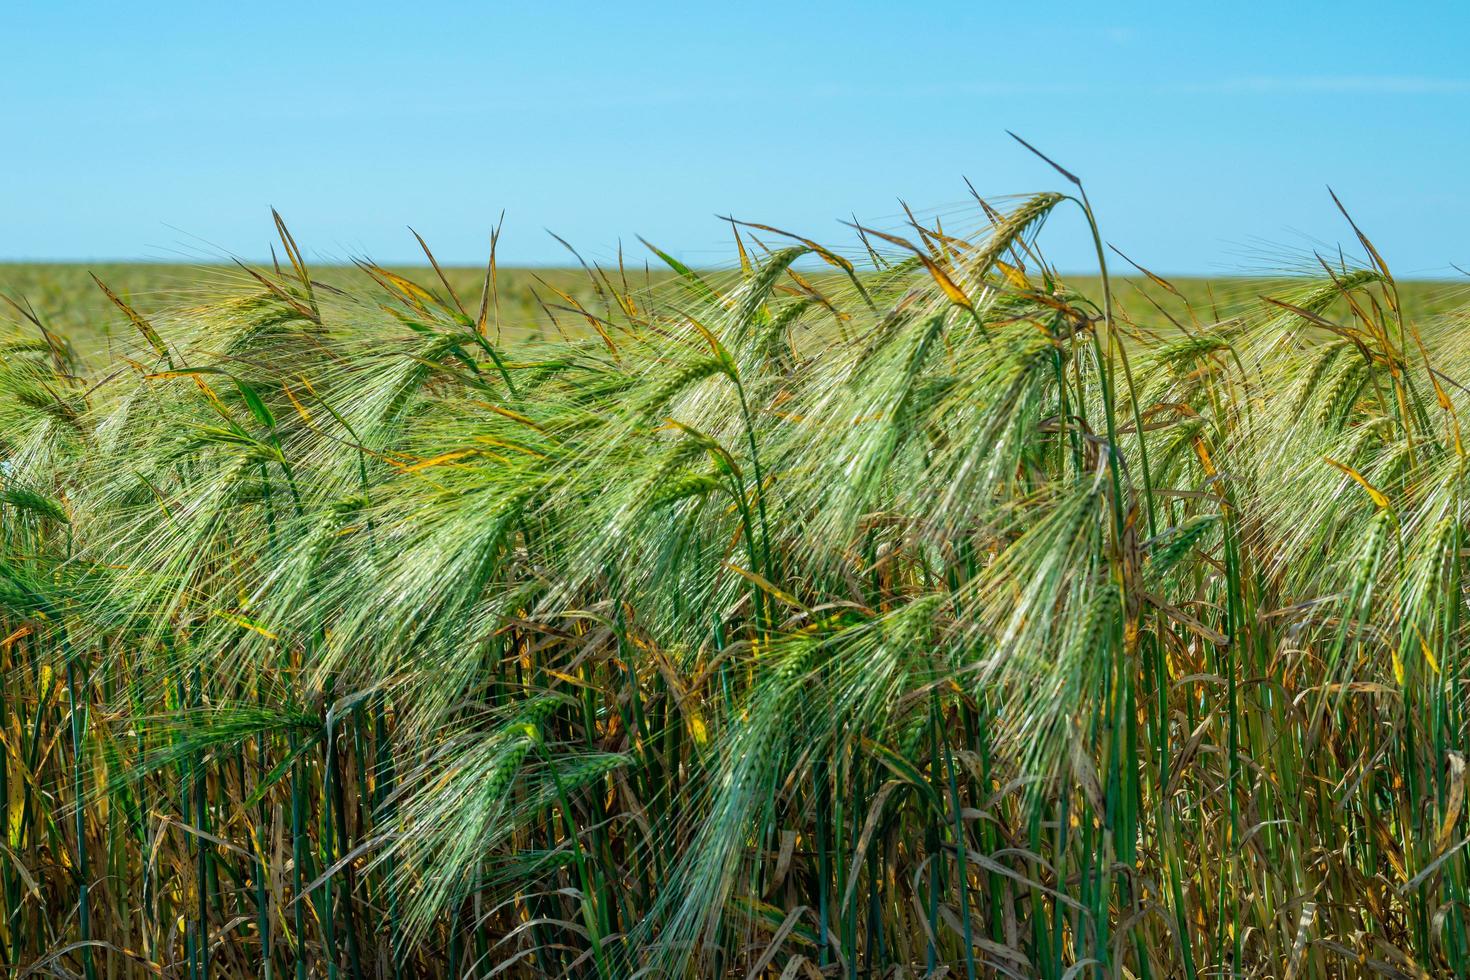 campo de trigo. campo agrícola com diferentes variedades de trigo foto